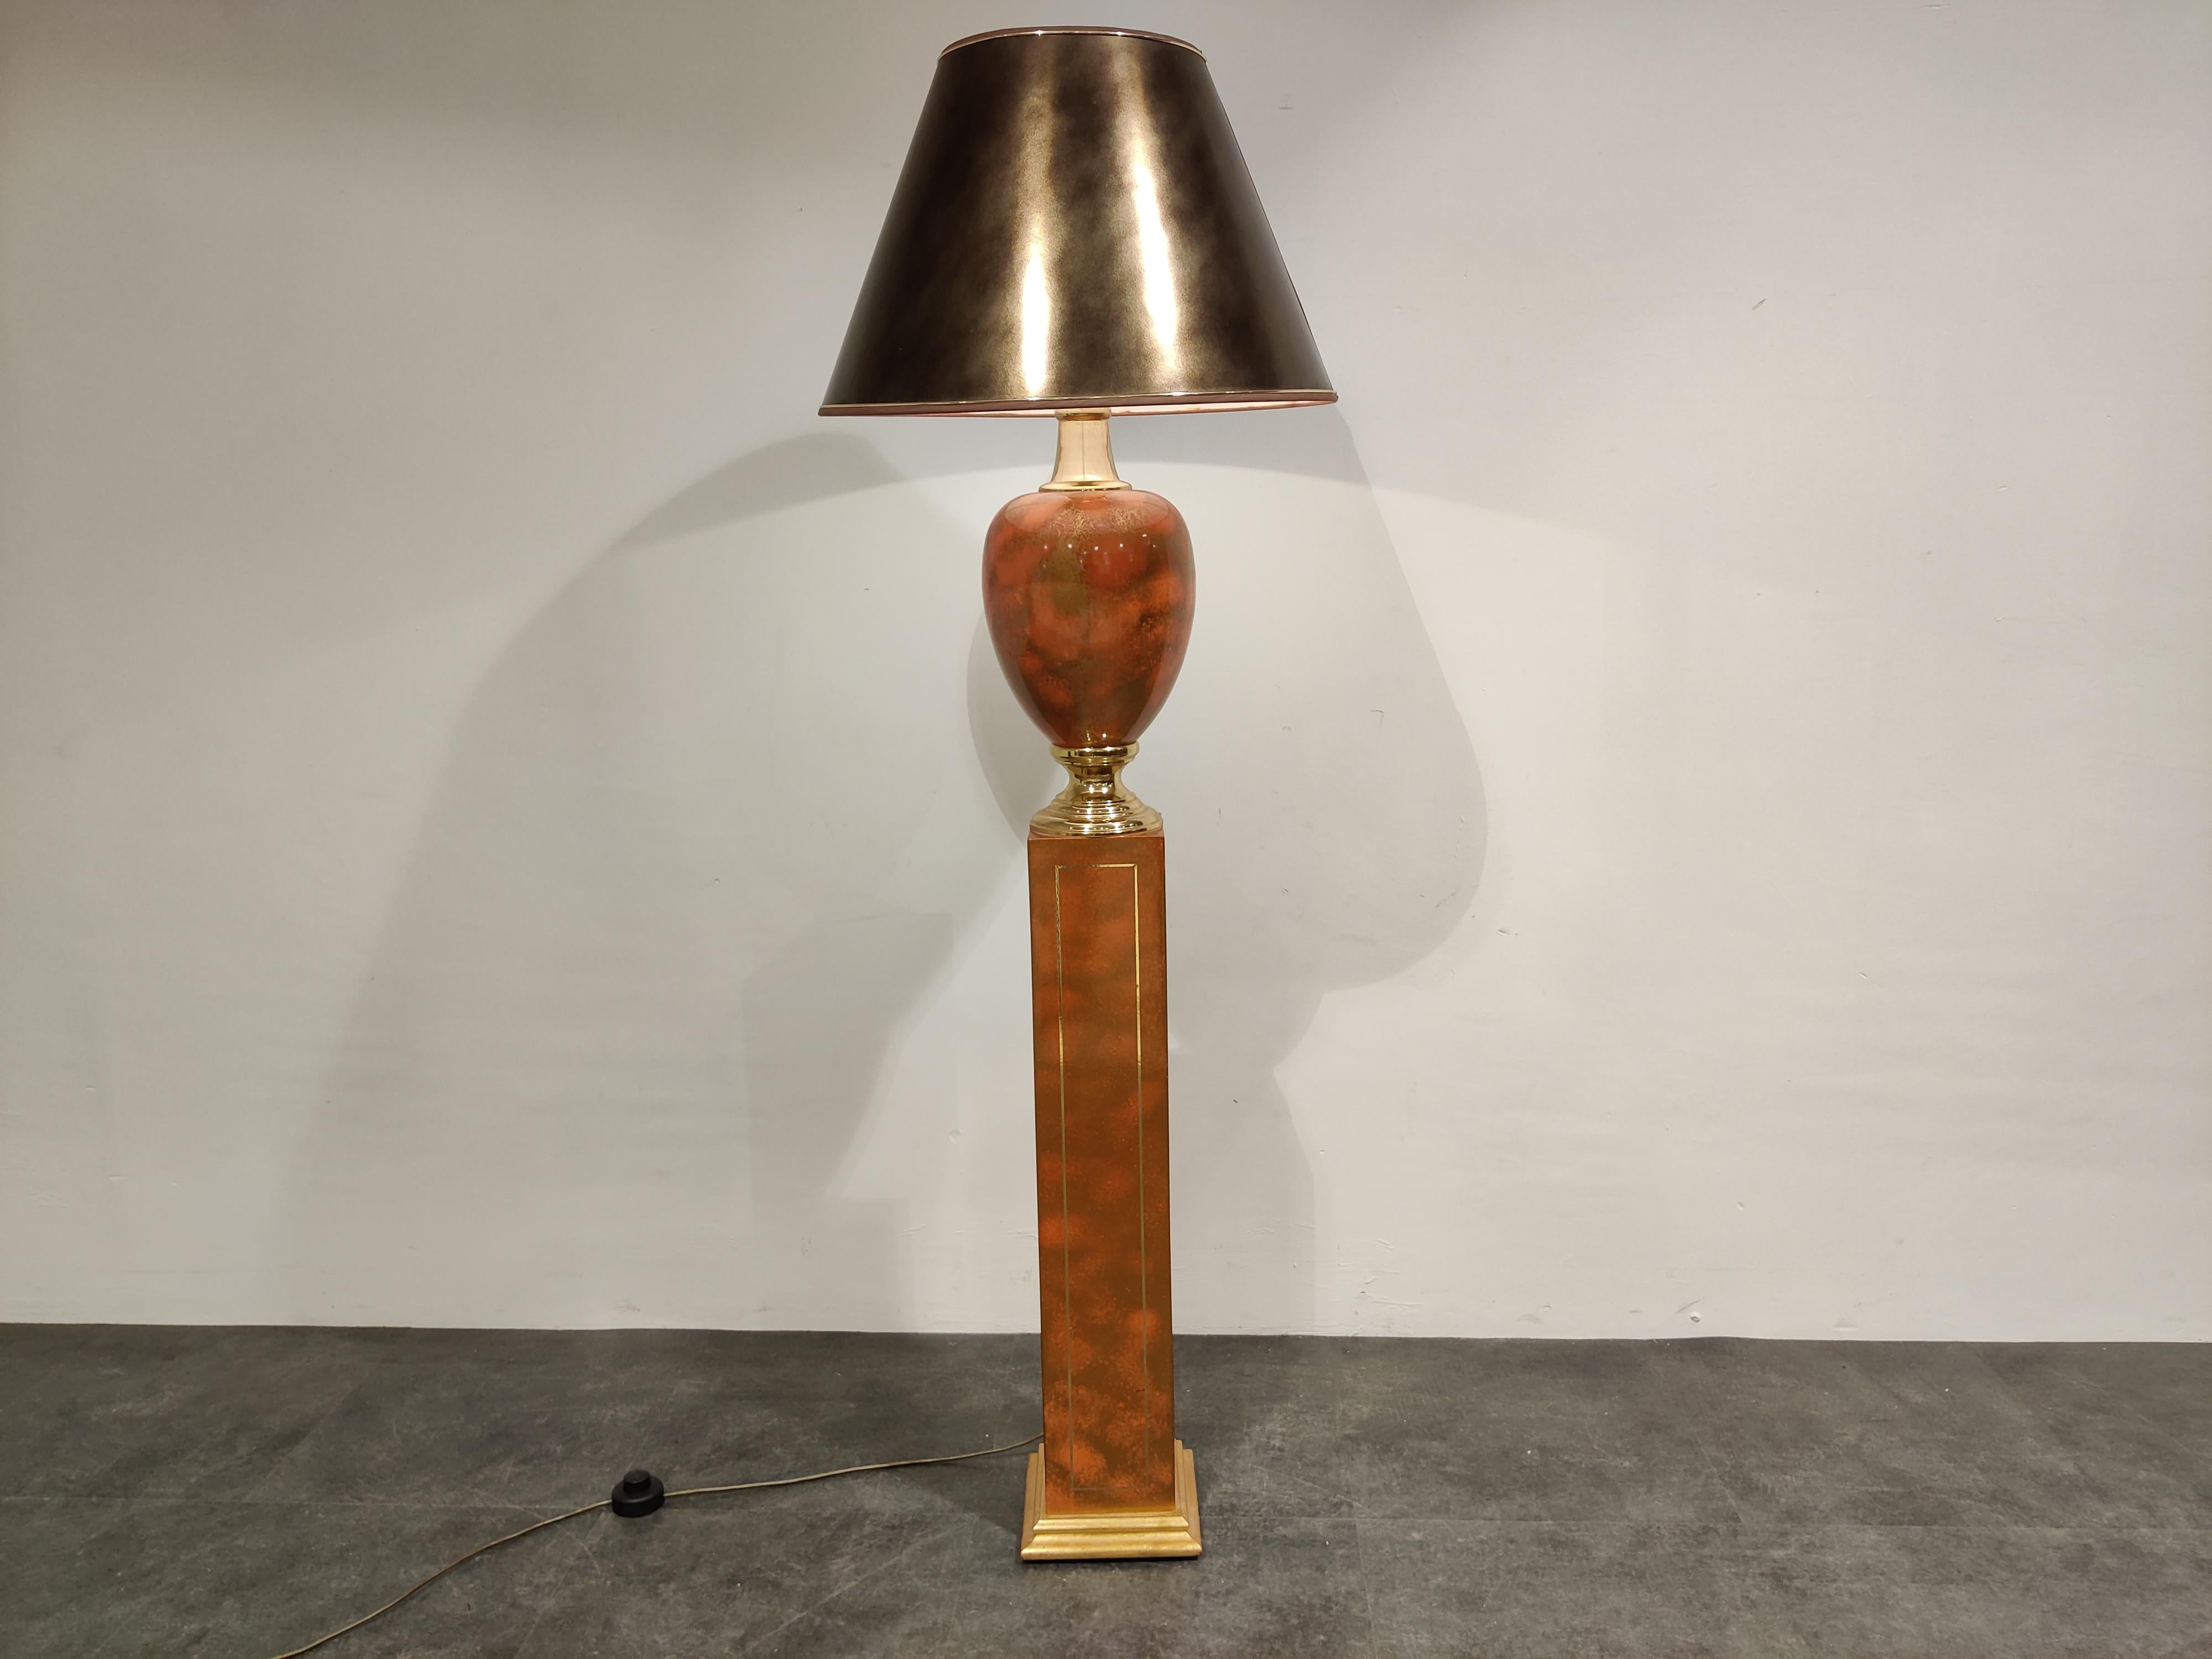 Elégant lampadaire en forme de vase de la Maison Le Dauphin.

Ce lampadaire en partie en laiton a une belle couleur, rouge foncé ou orange

Belle pièce d'éclairage Hollywood Regency.

Livré avec un abat-jour d'époque qui présente un léger